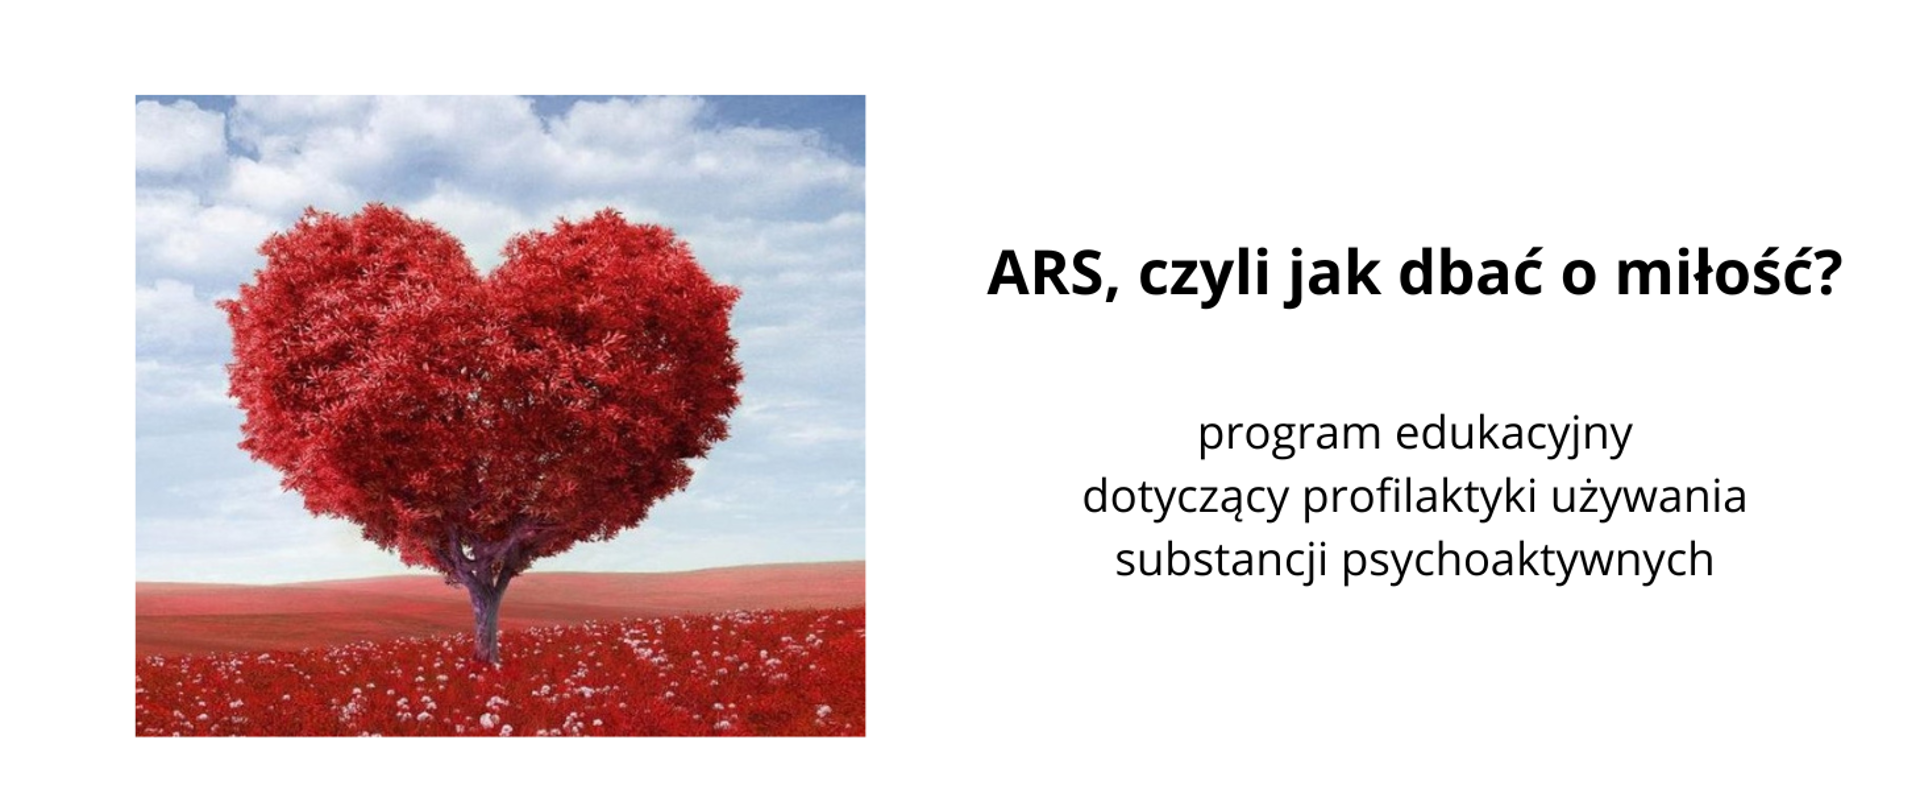 Program_ARS, czyli jak dbać o miłość?_logo 